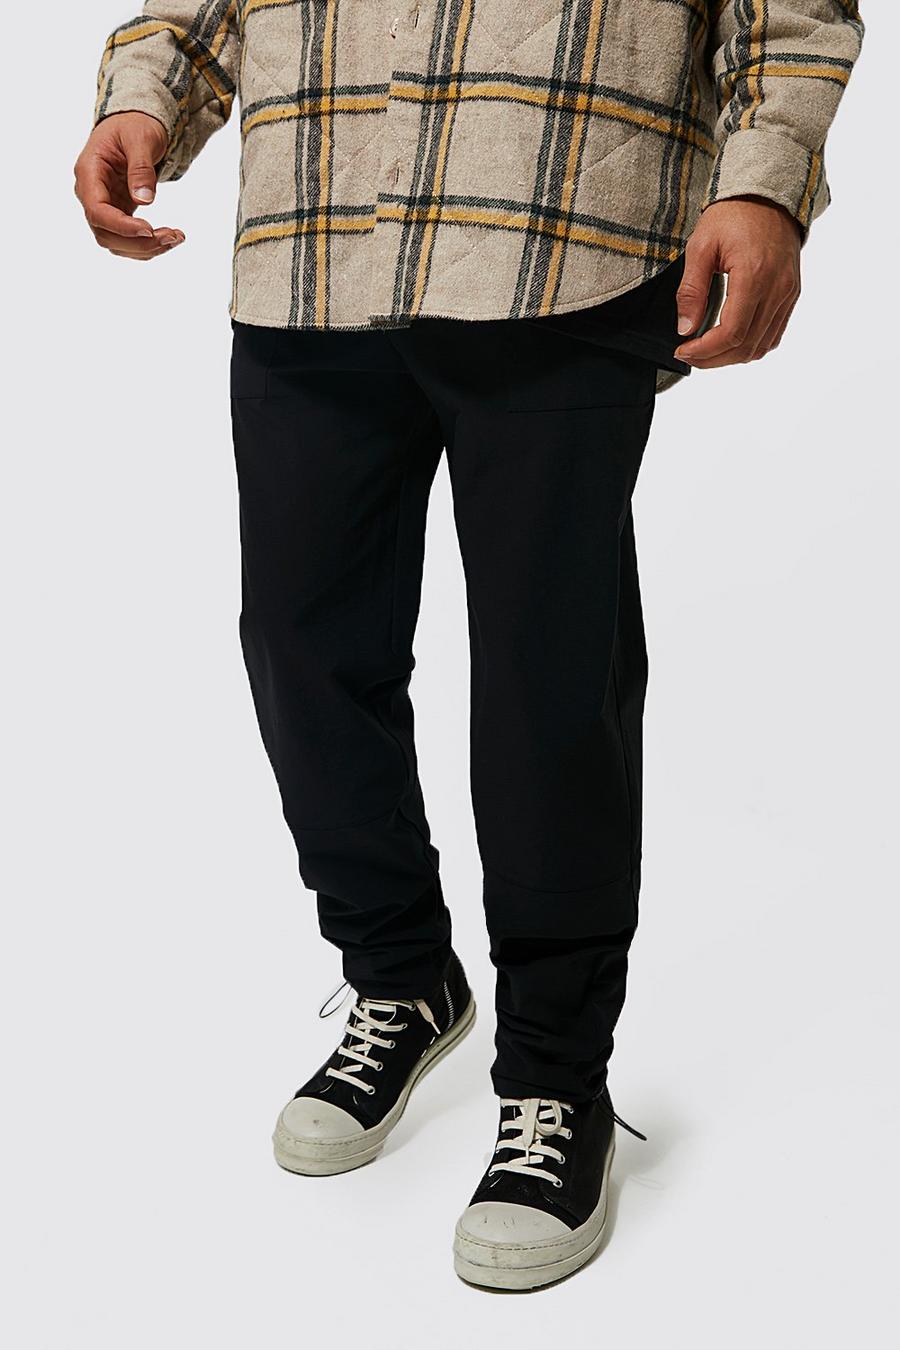 Pantalón Ofcl elástico técnico con paneles, Black nero